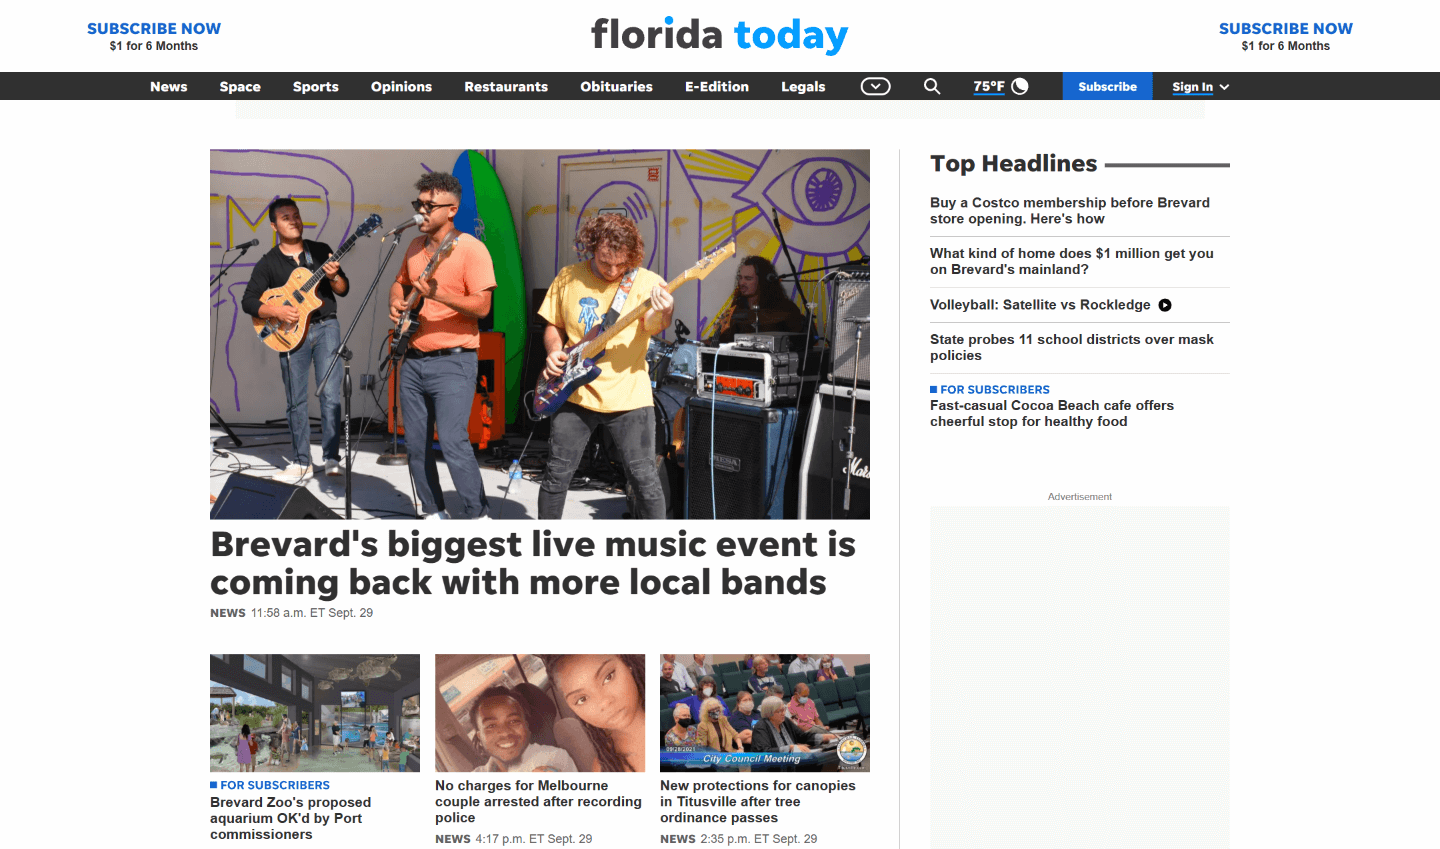 Florida Newspapers 11 Florida Today website